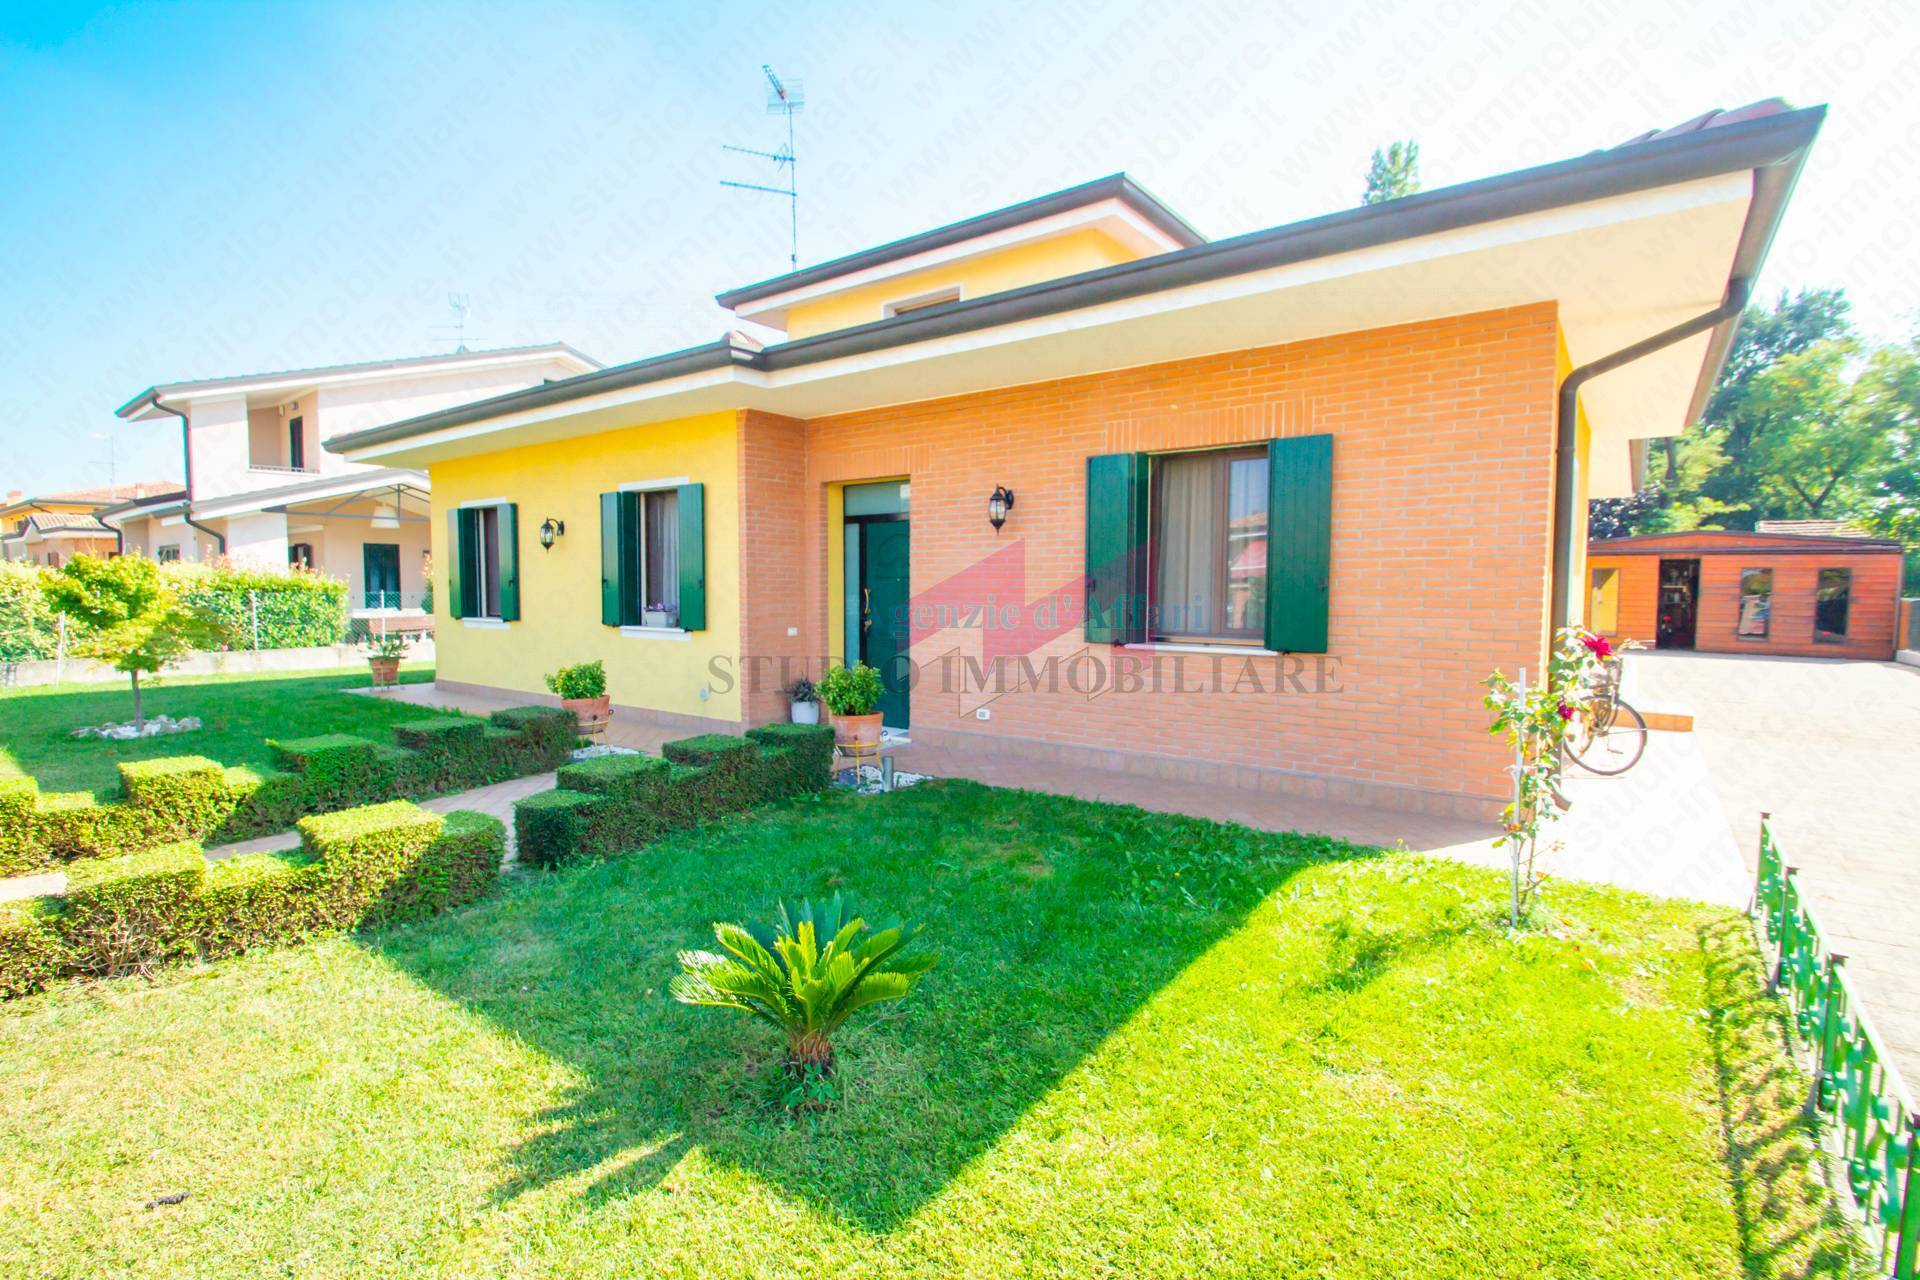 Villa in vendita a Melara, 5 locali, prezzo € 234.000 | PortaleAgenzieImmobiliari.it